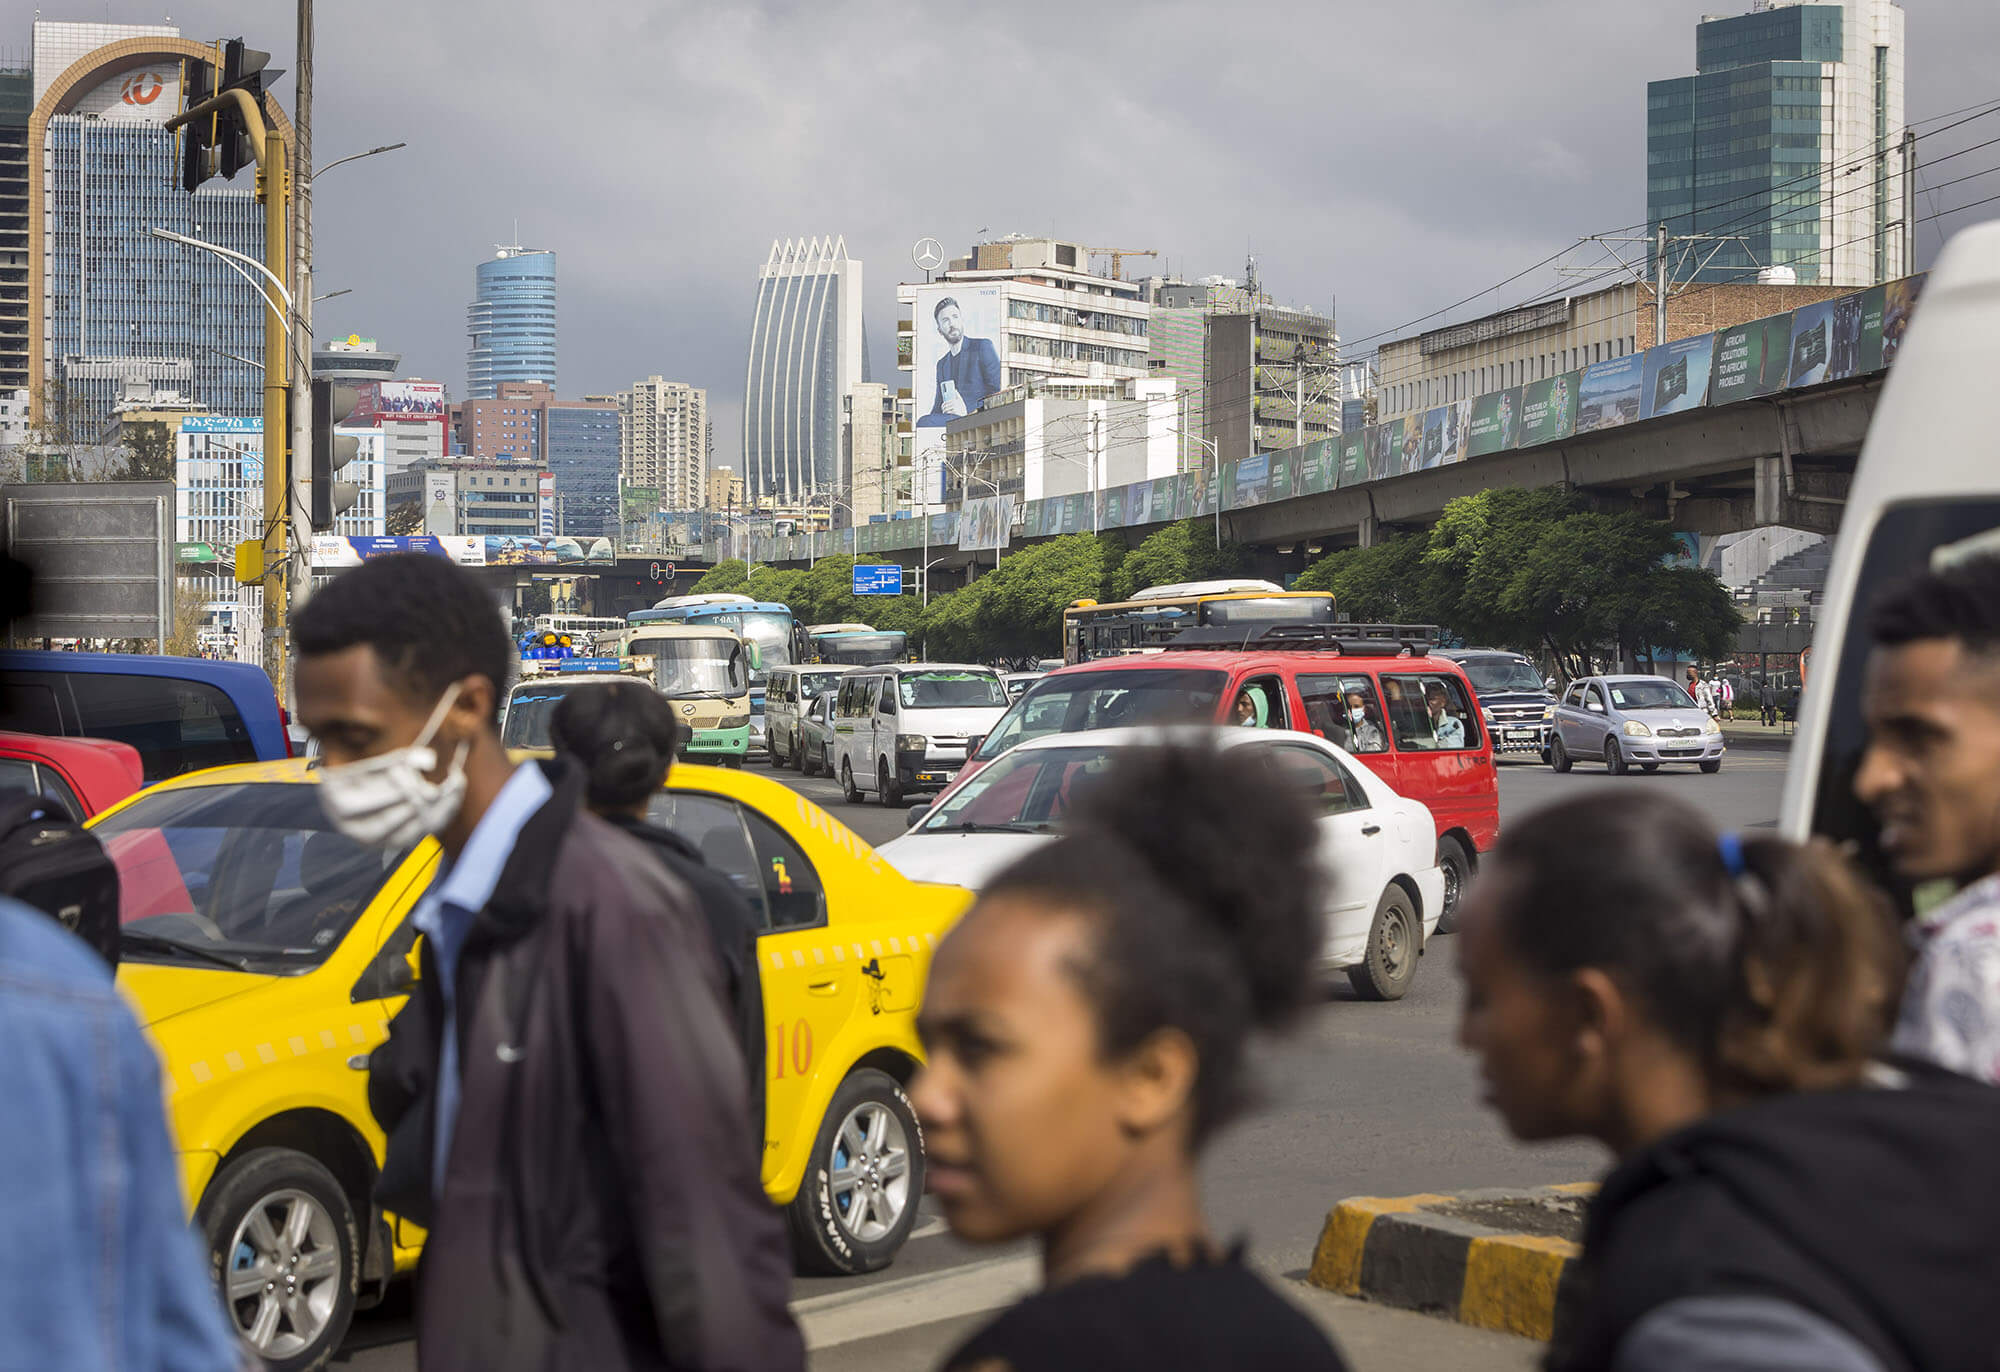 Straßenszene in Addis Abeba